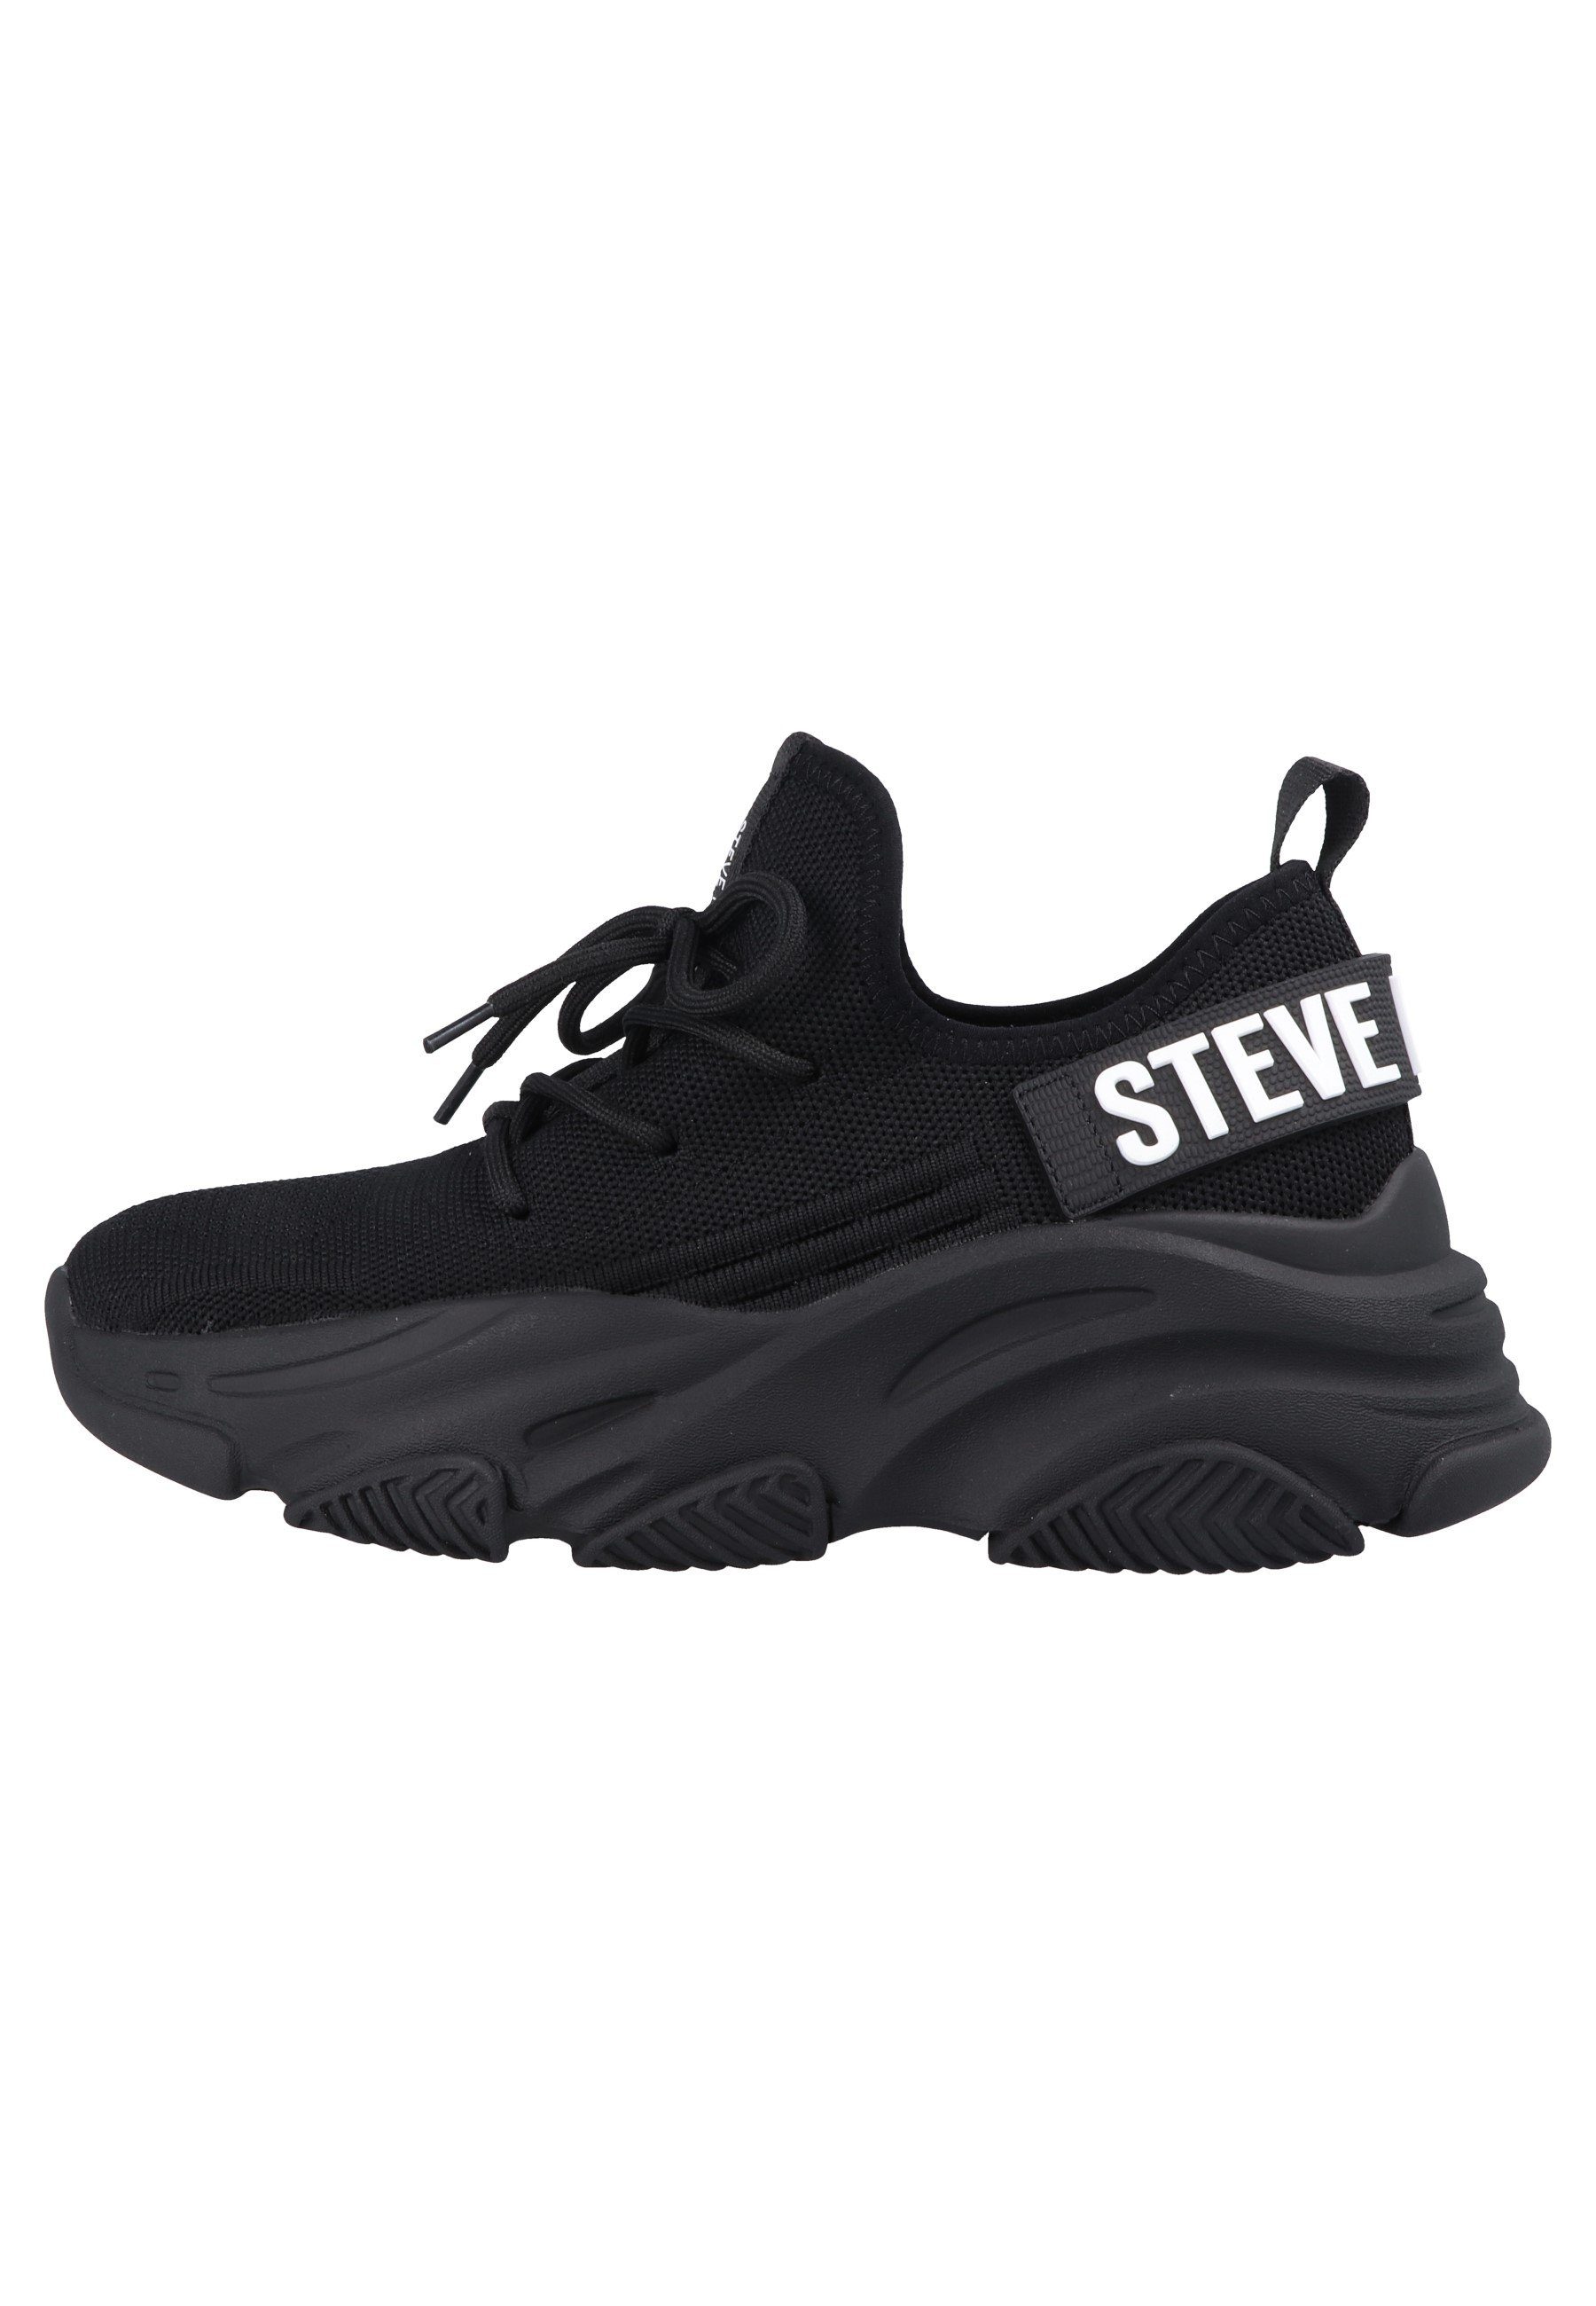 STEVE MADDEN SM19000032 Protege-E Sneaker